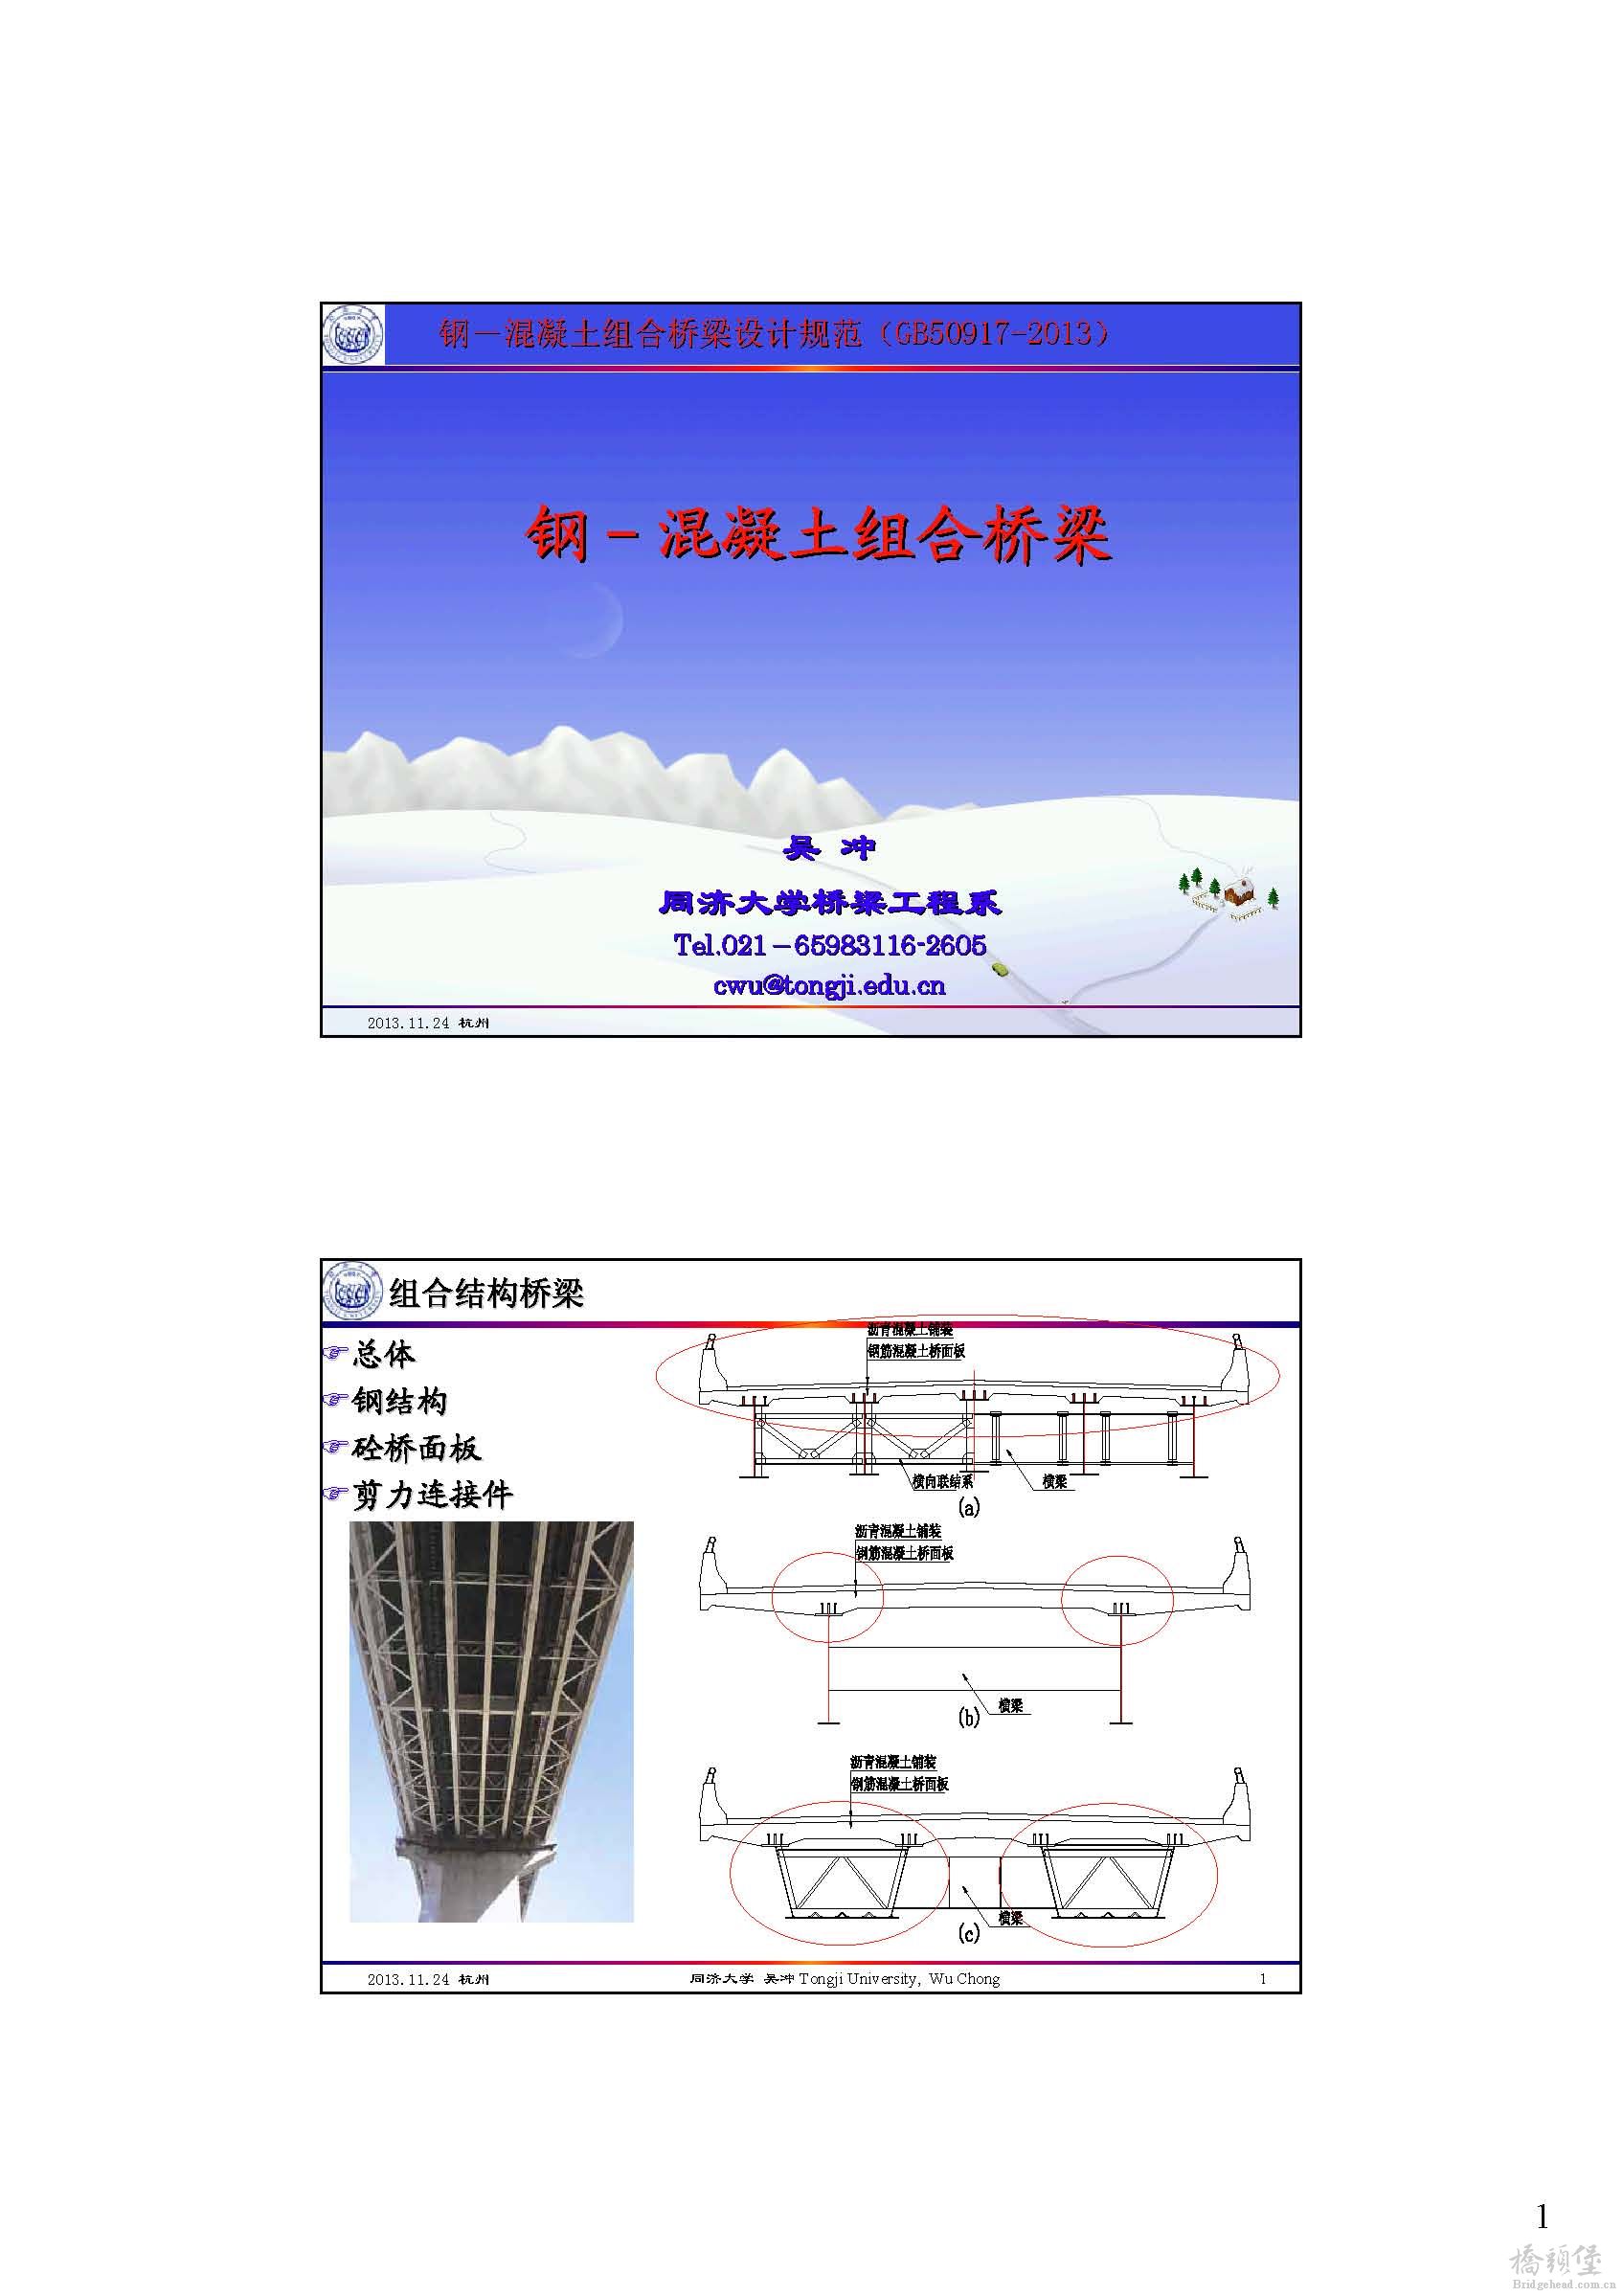 组合桥总体设计与构造（吴冲）_页面_01.jpg